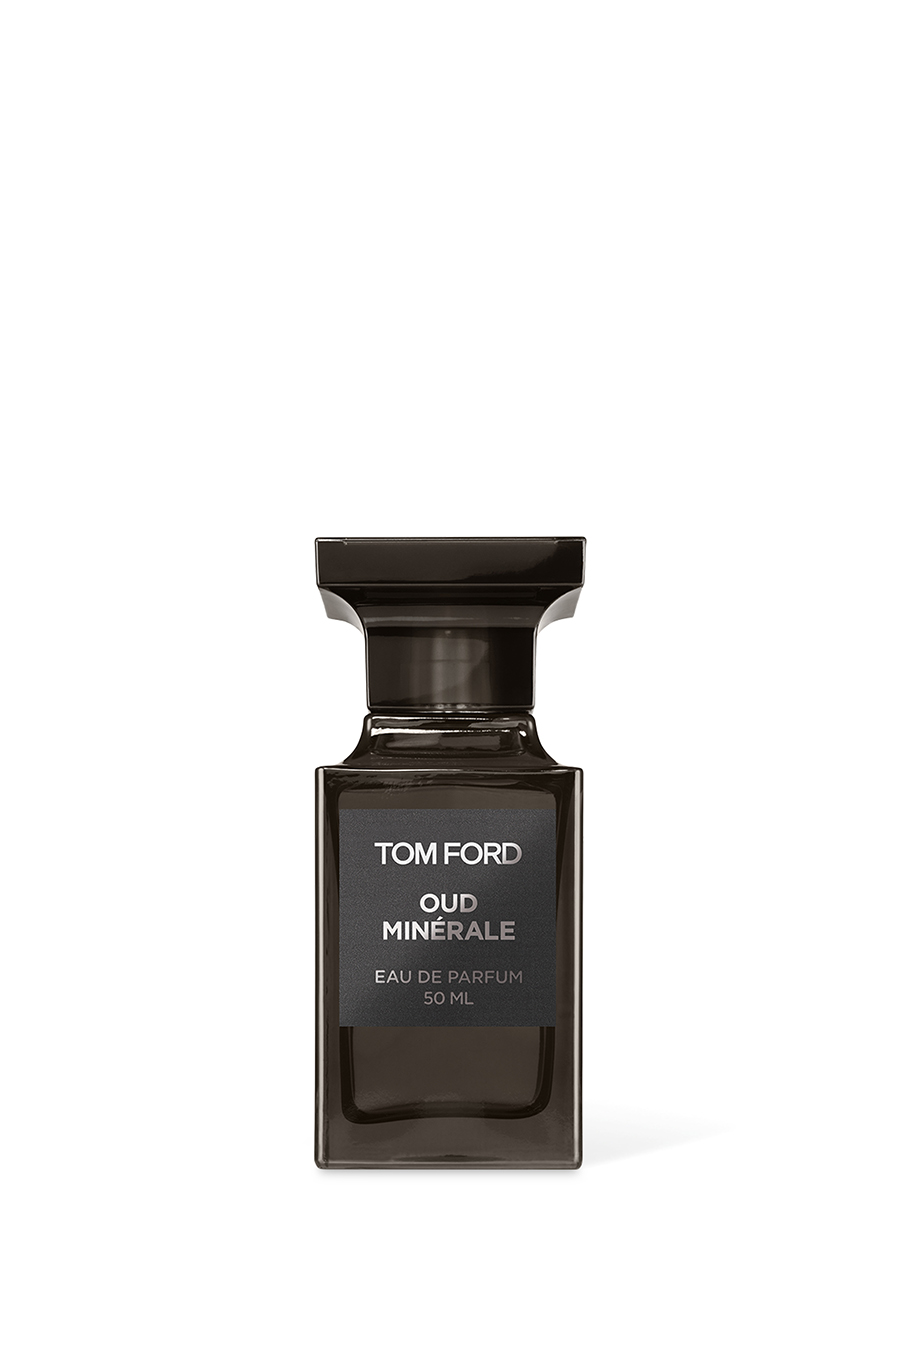 Buy Tom Ford Oud Minérale Eau de Parfum for | Bloomingdale's KSA